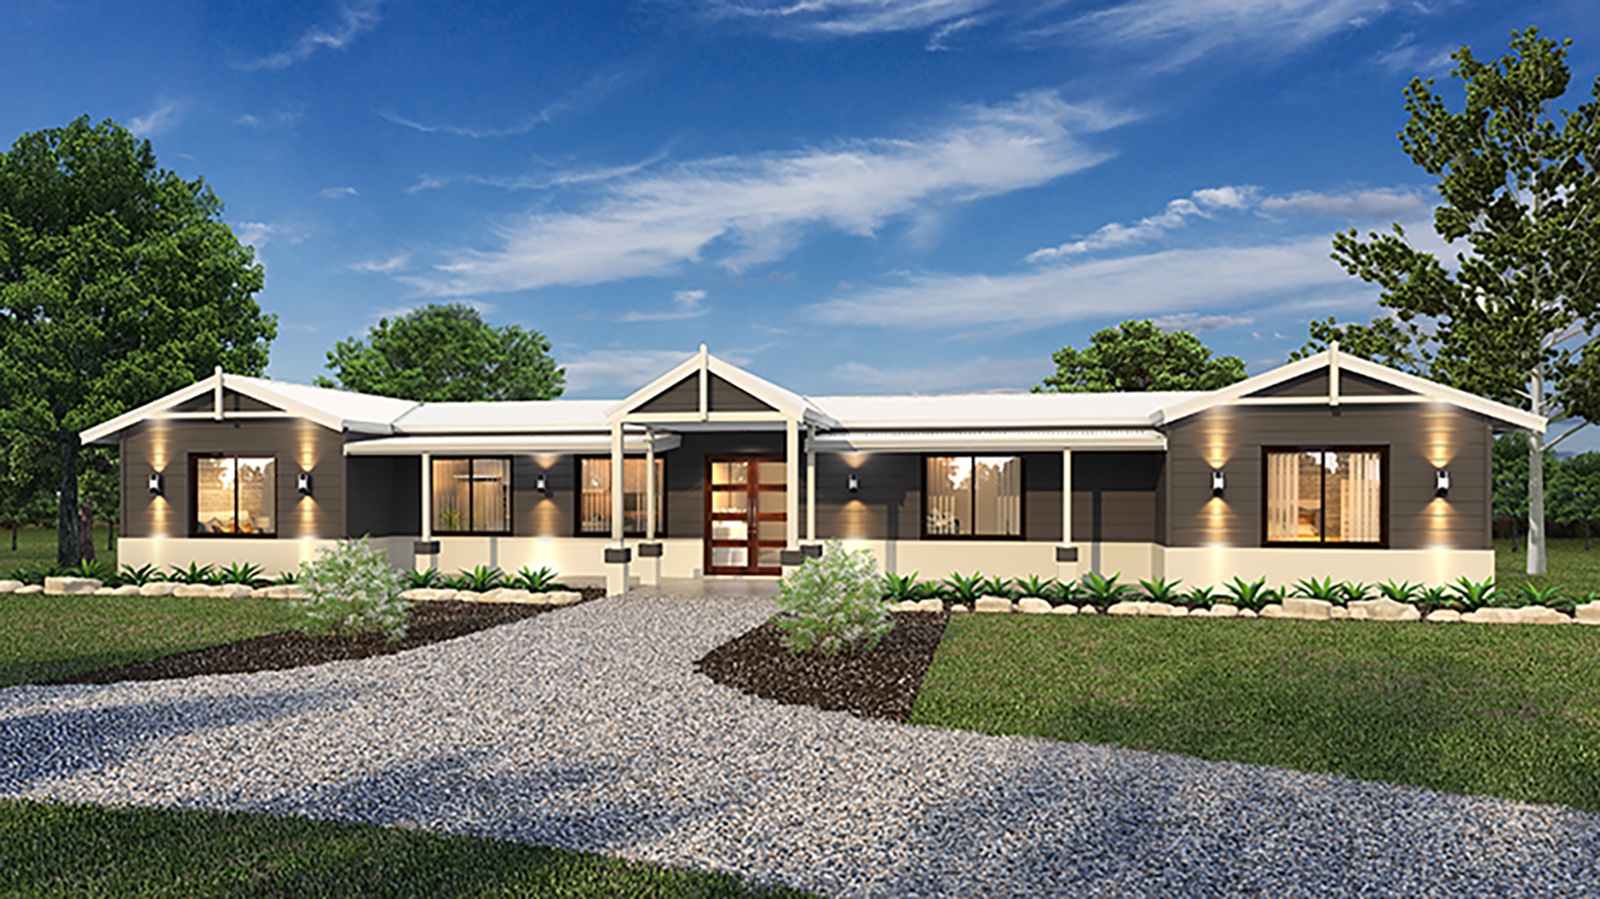 Modular Homes Wa Built In 15 Weeks, Stilt House Plans Australia